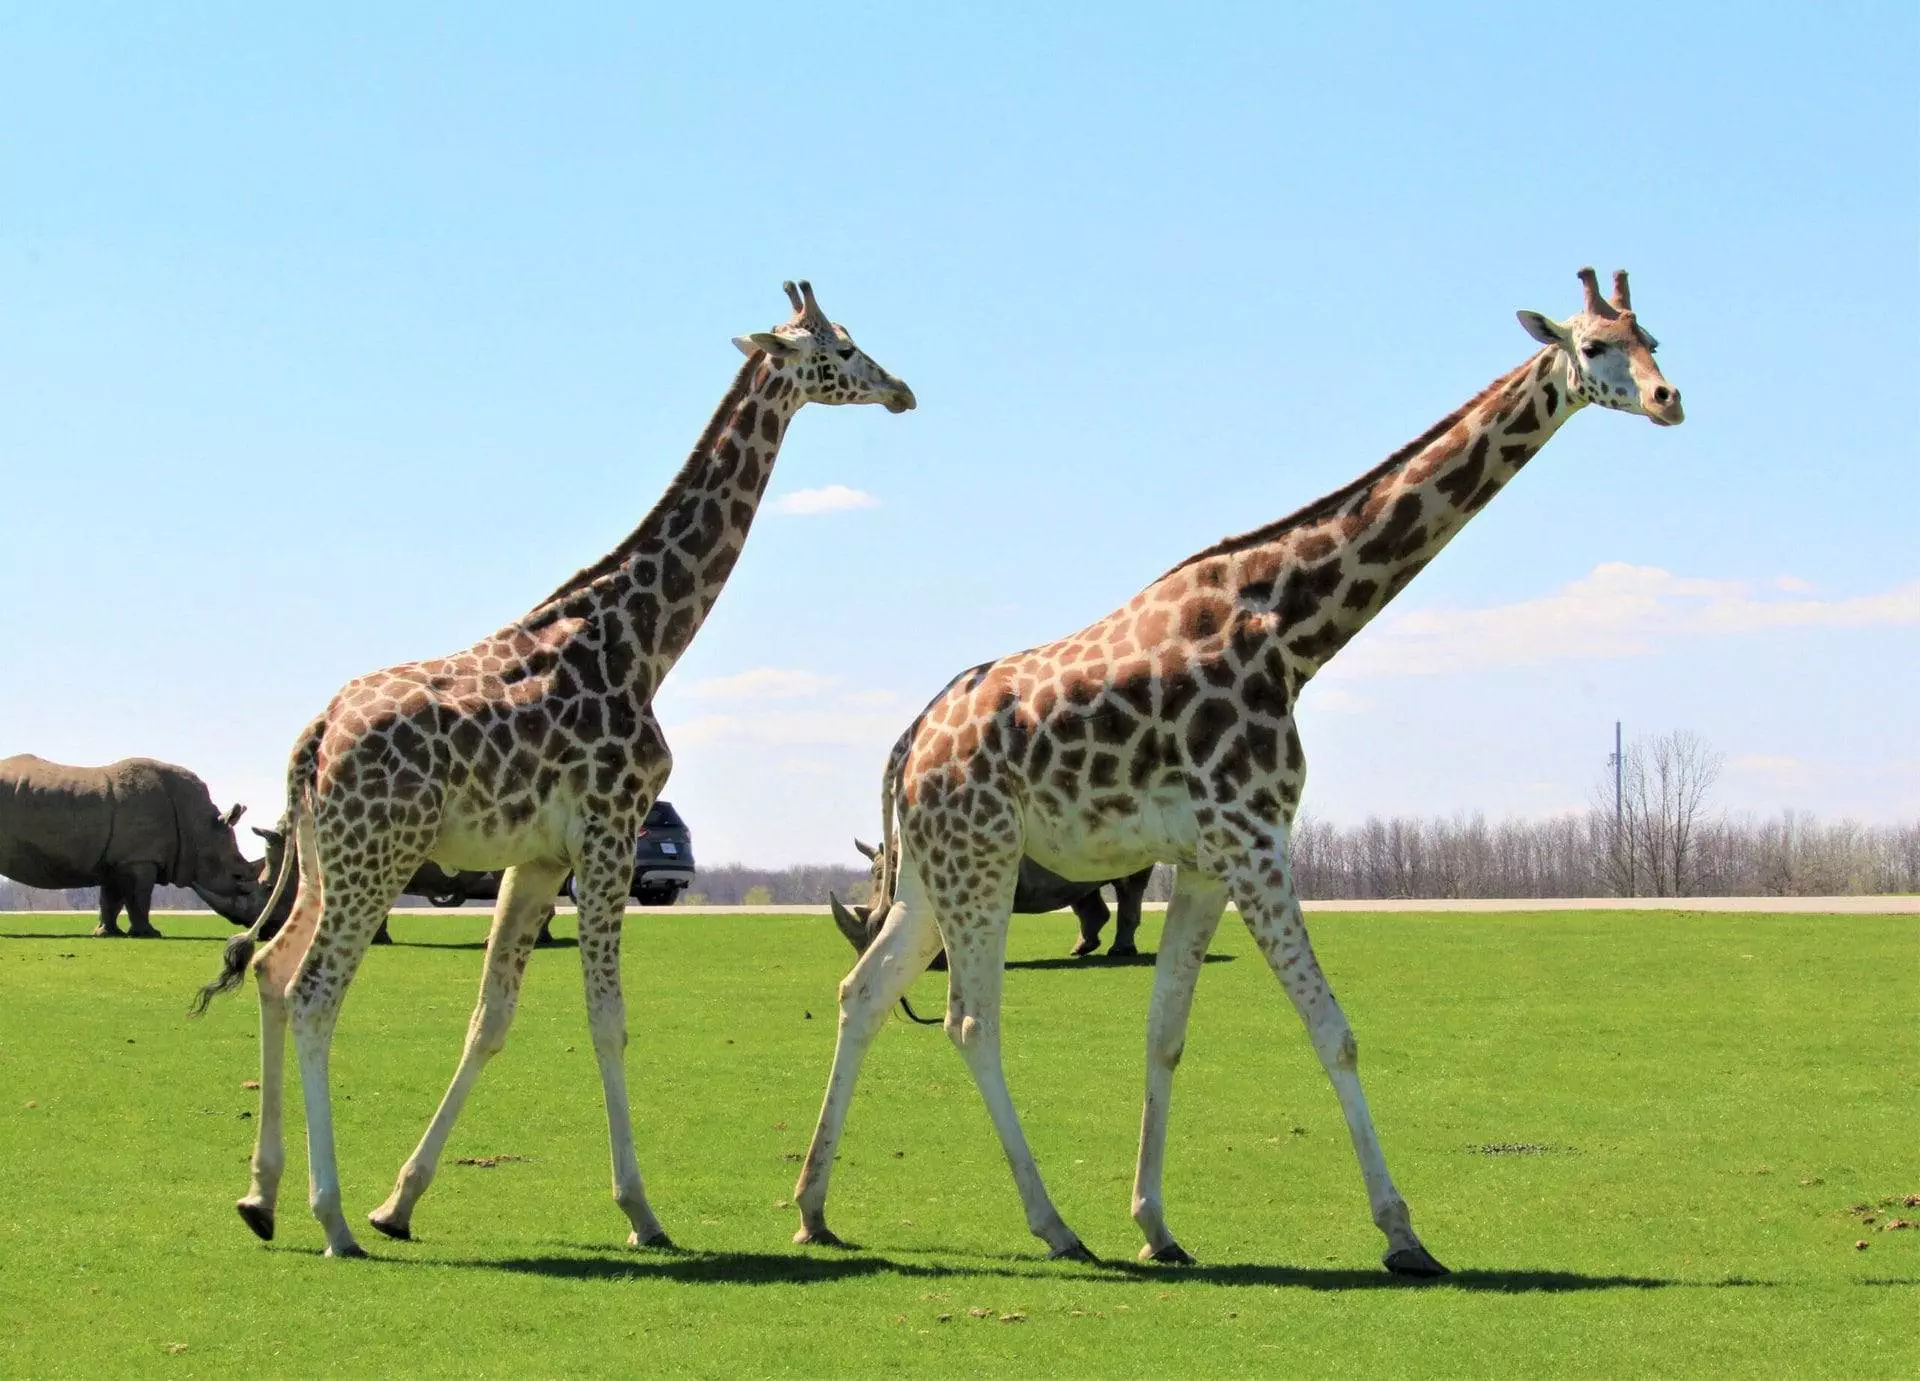 Two giraffe walking